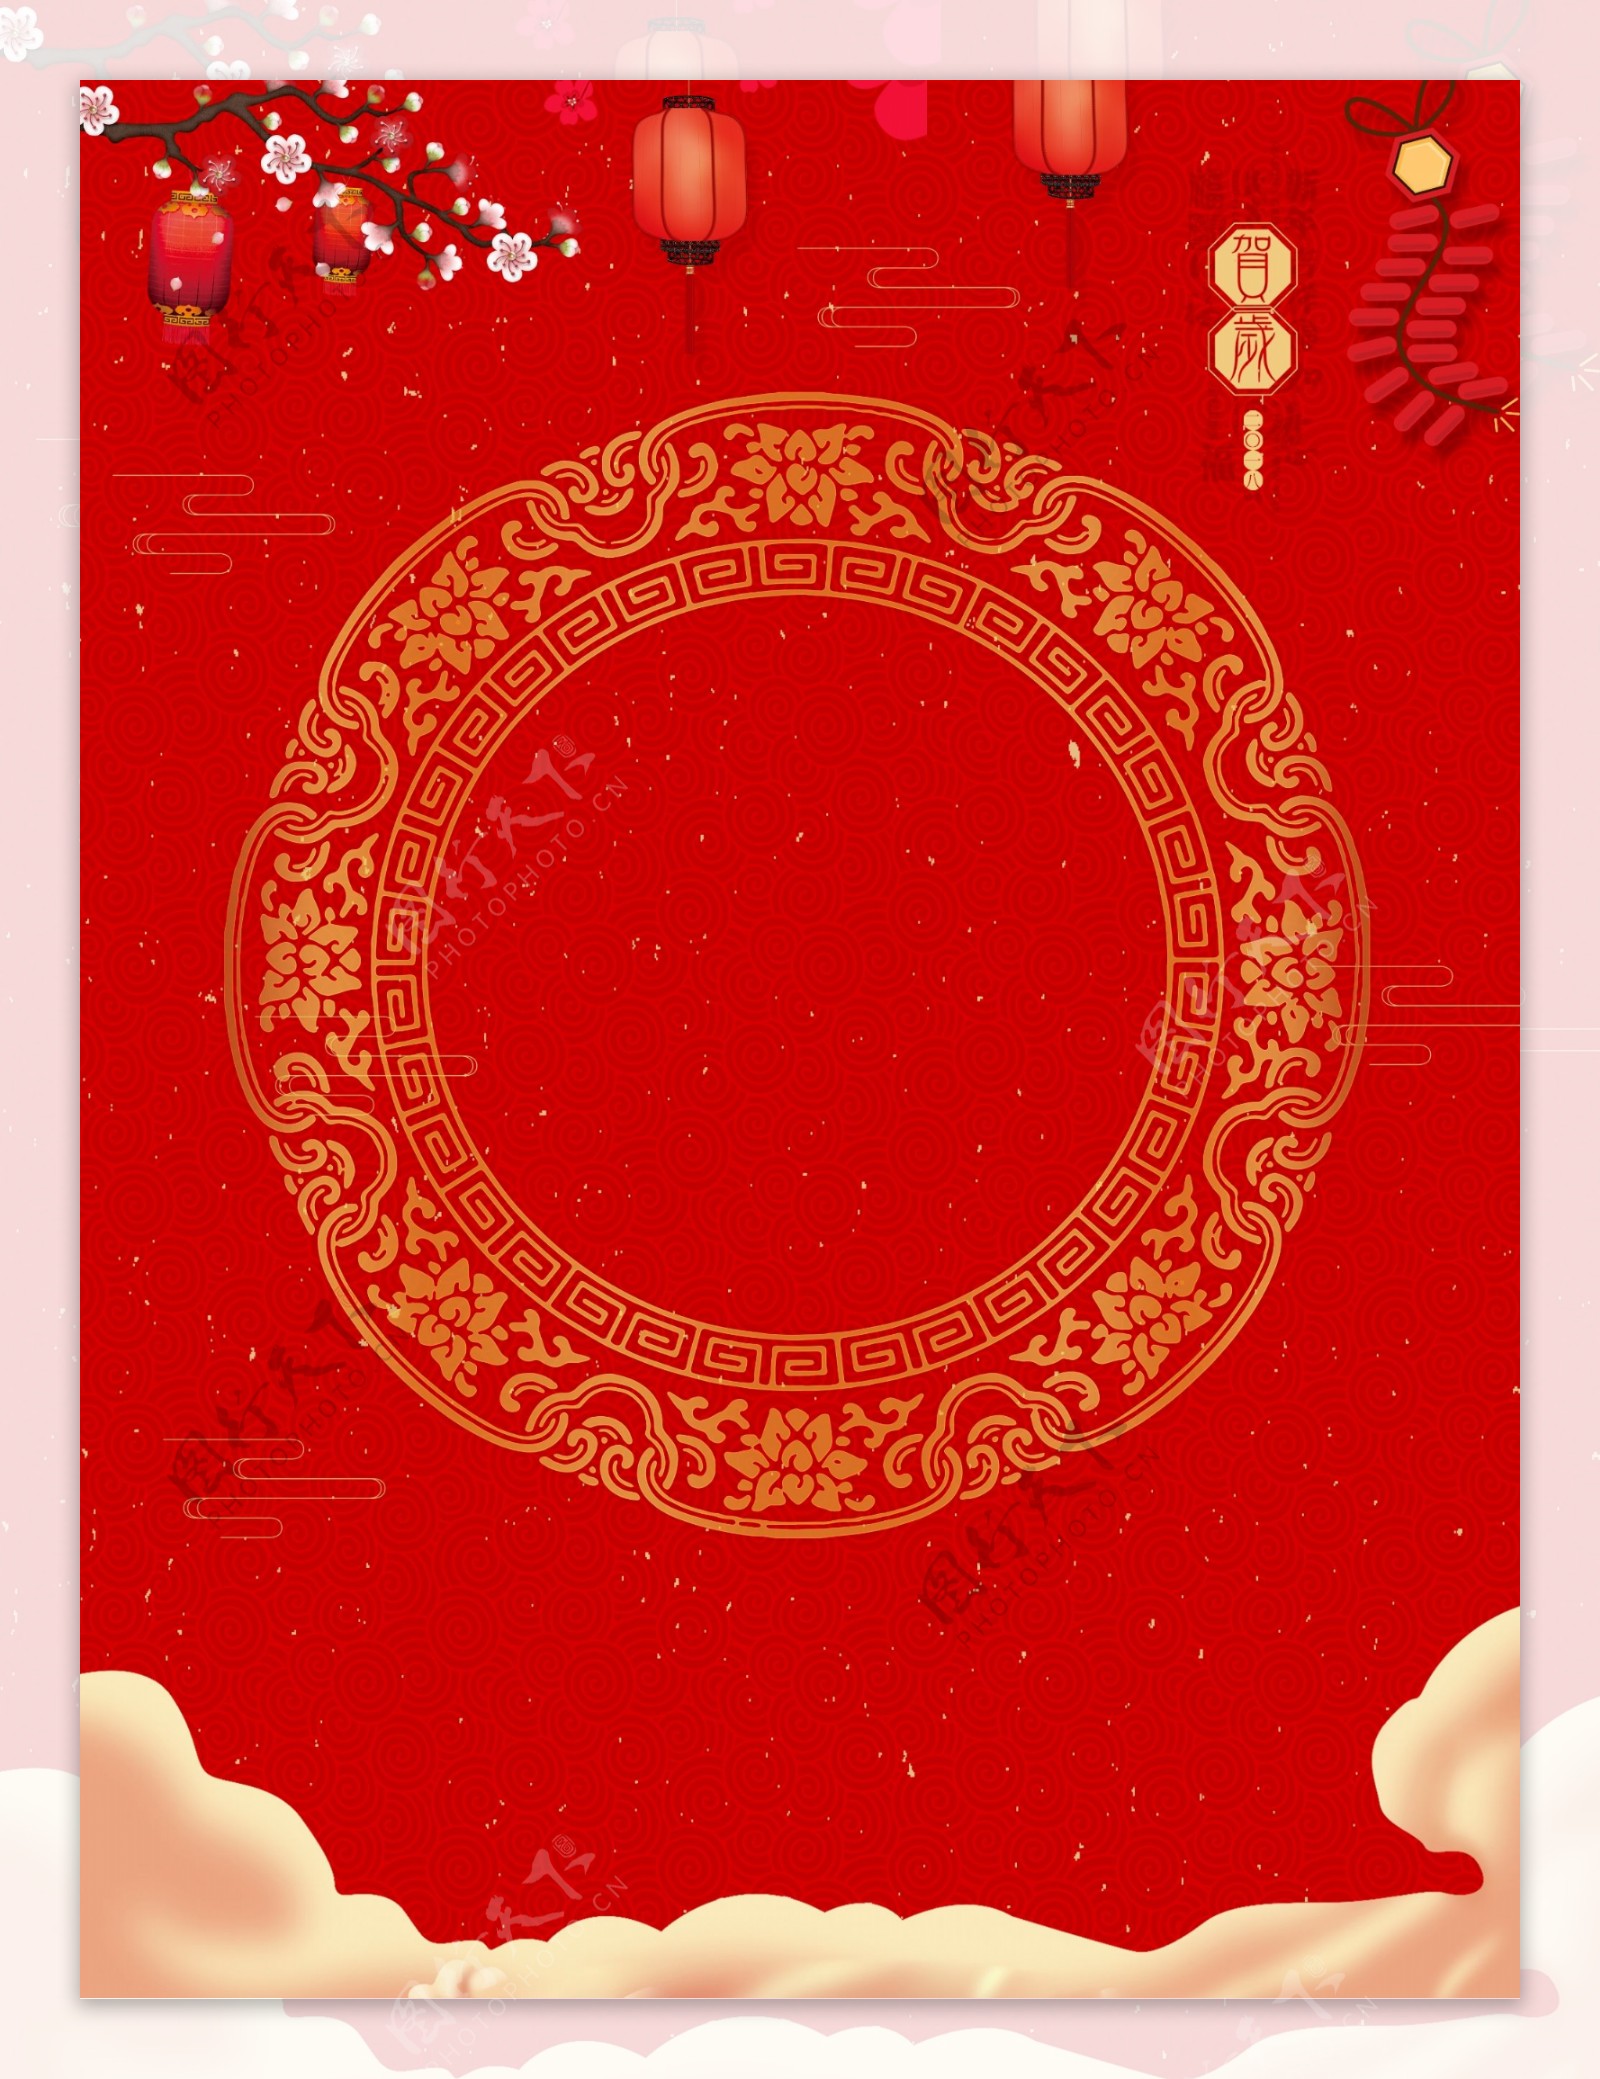 红色喜庆猪年新年背景素材设计